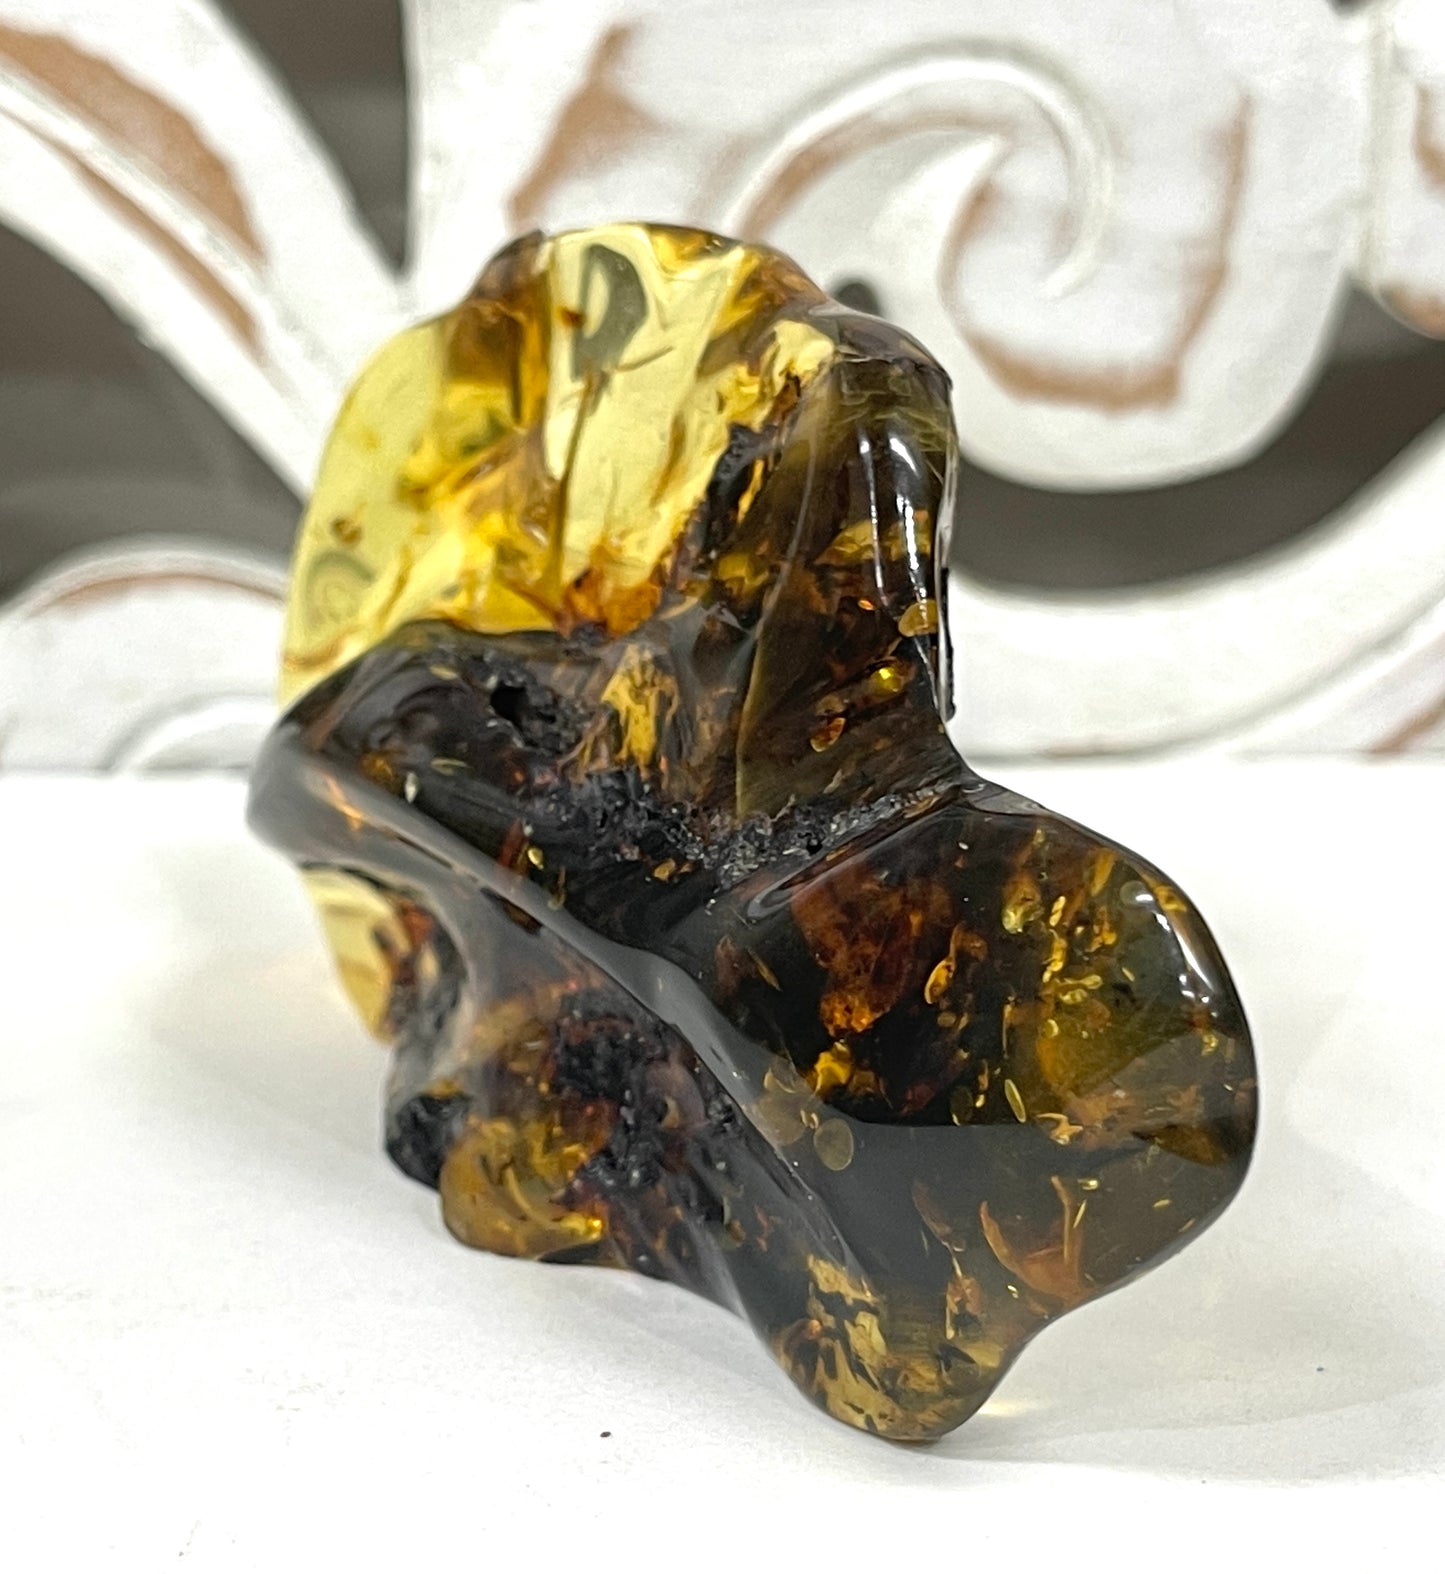 Polished Amber Specimens